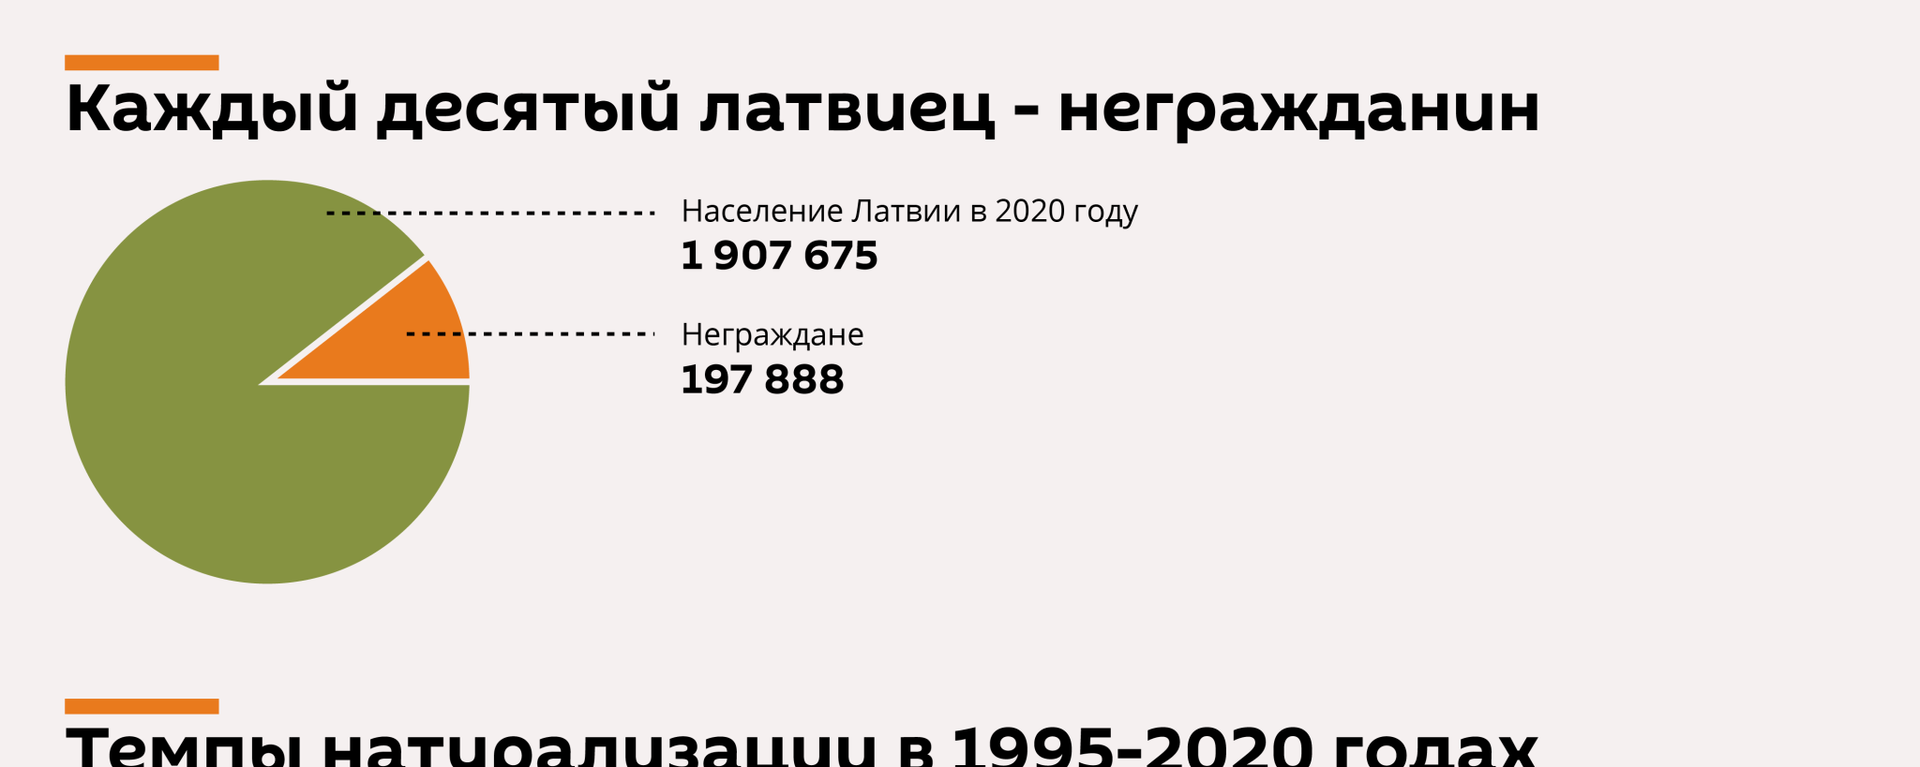 Натурализация сходит на нет: неграждане в Латвии надолго - Sputnik Латвия, 1920, 14.02.2021